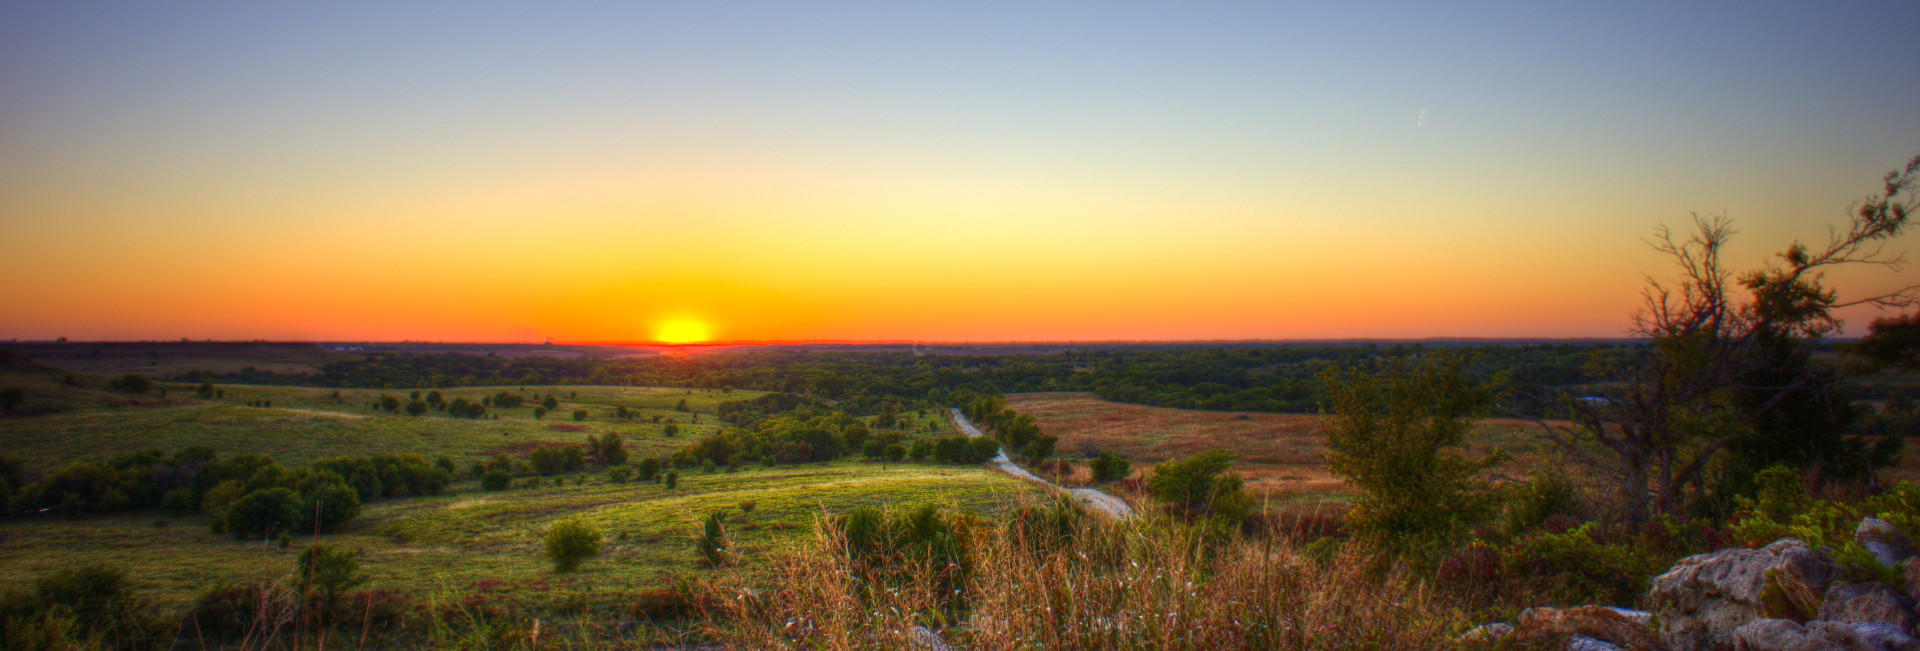 Kansas Sunset image